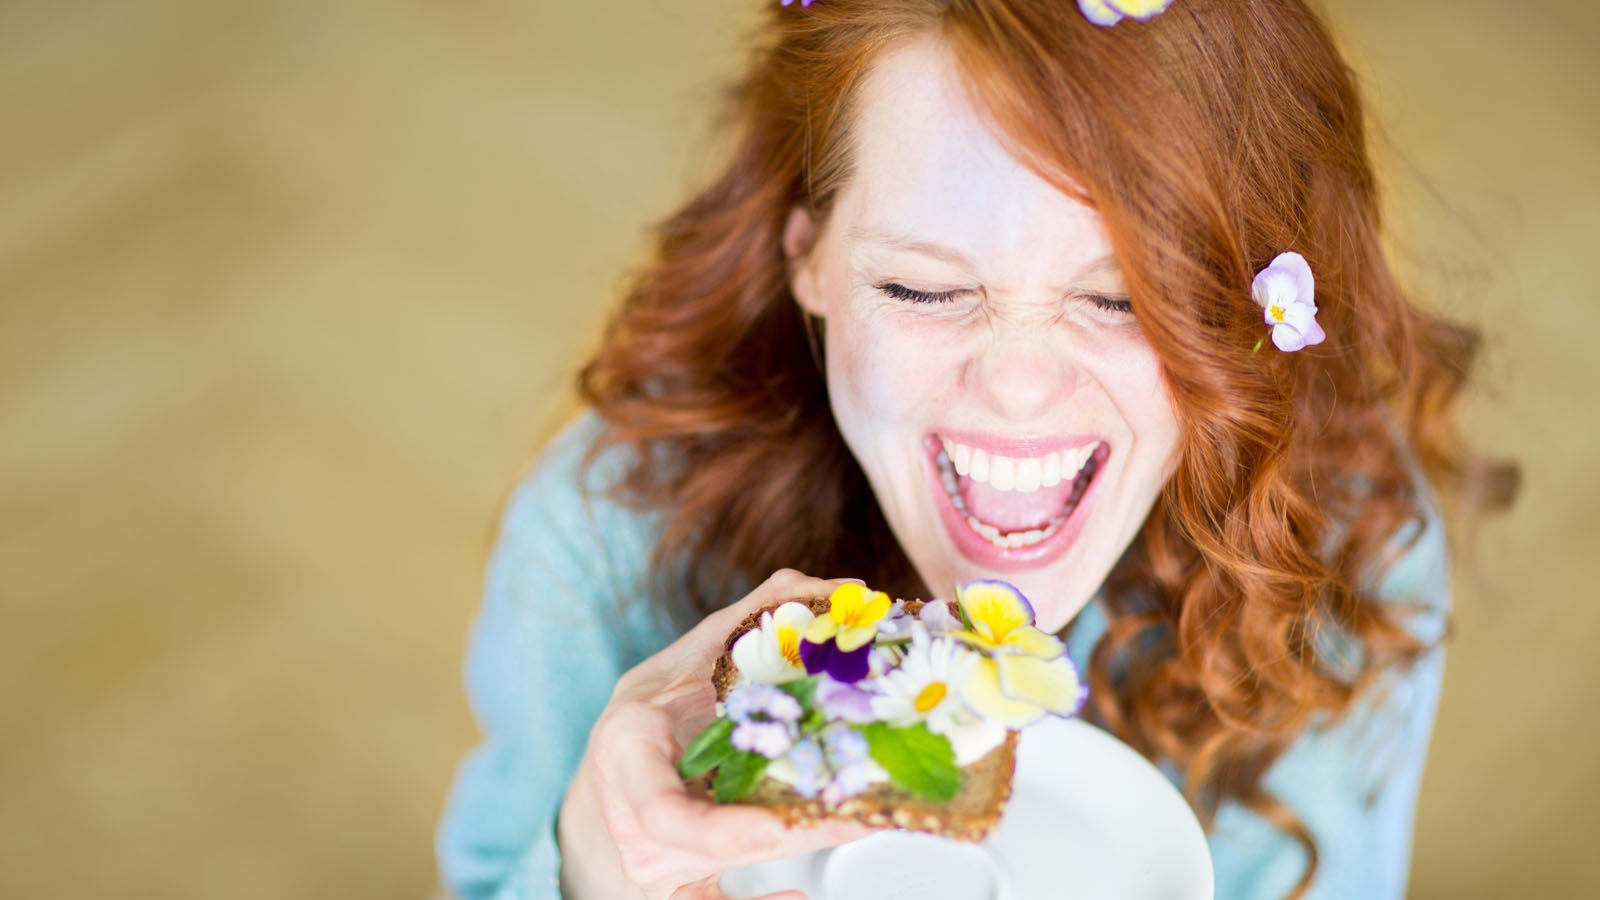 7 consigli per mangiare sano e vivere felici | Nicola Sangalli